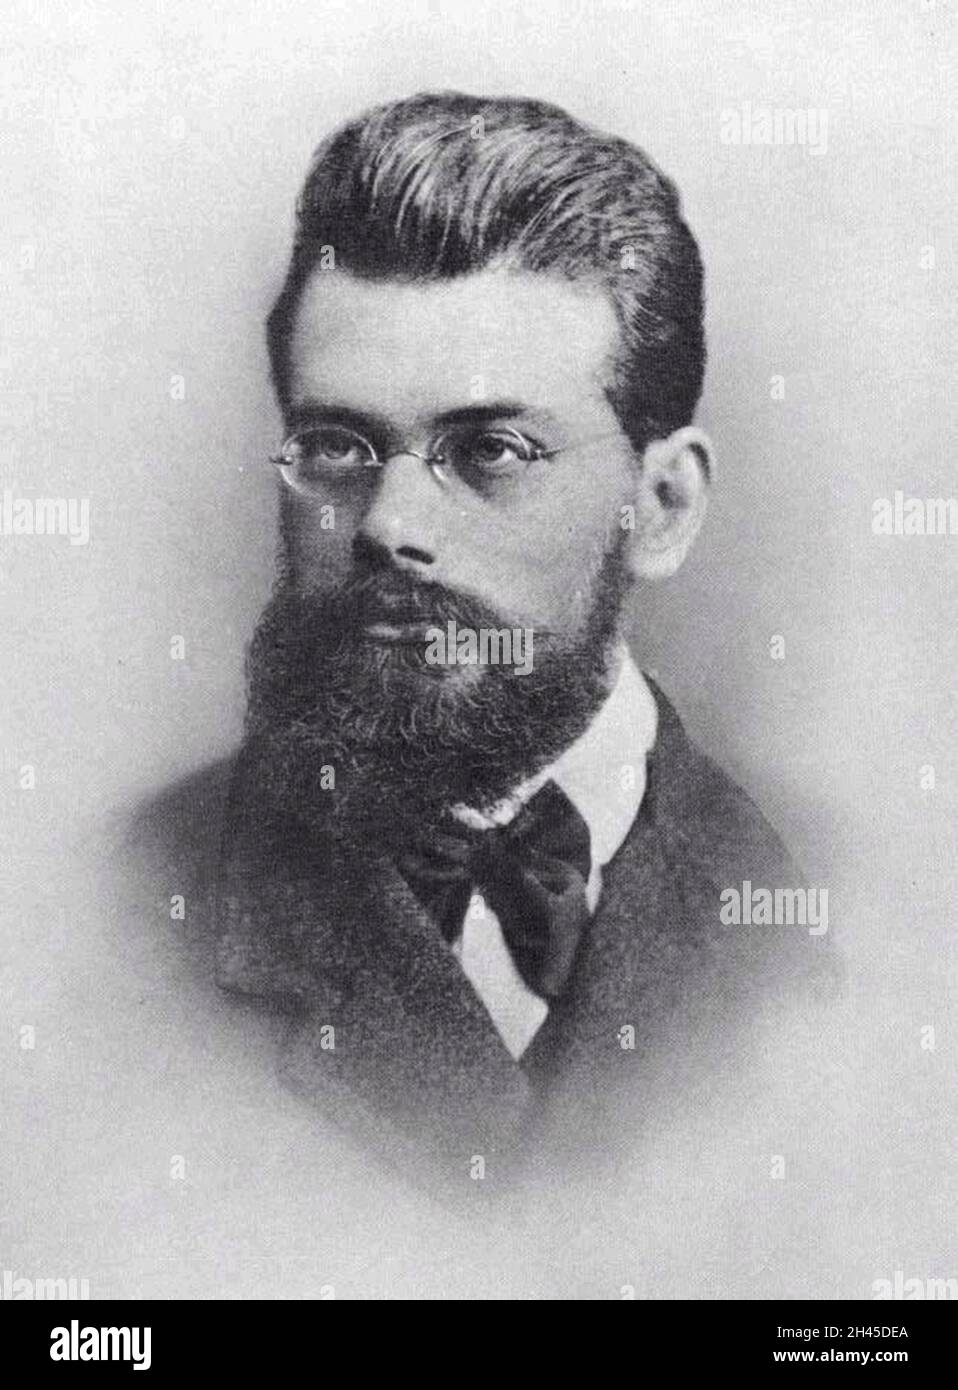 Un portrait du statisticien et physicien autrichien du XIXe siècle, Ludwig Boltzmann Banque D'Images